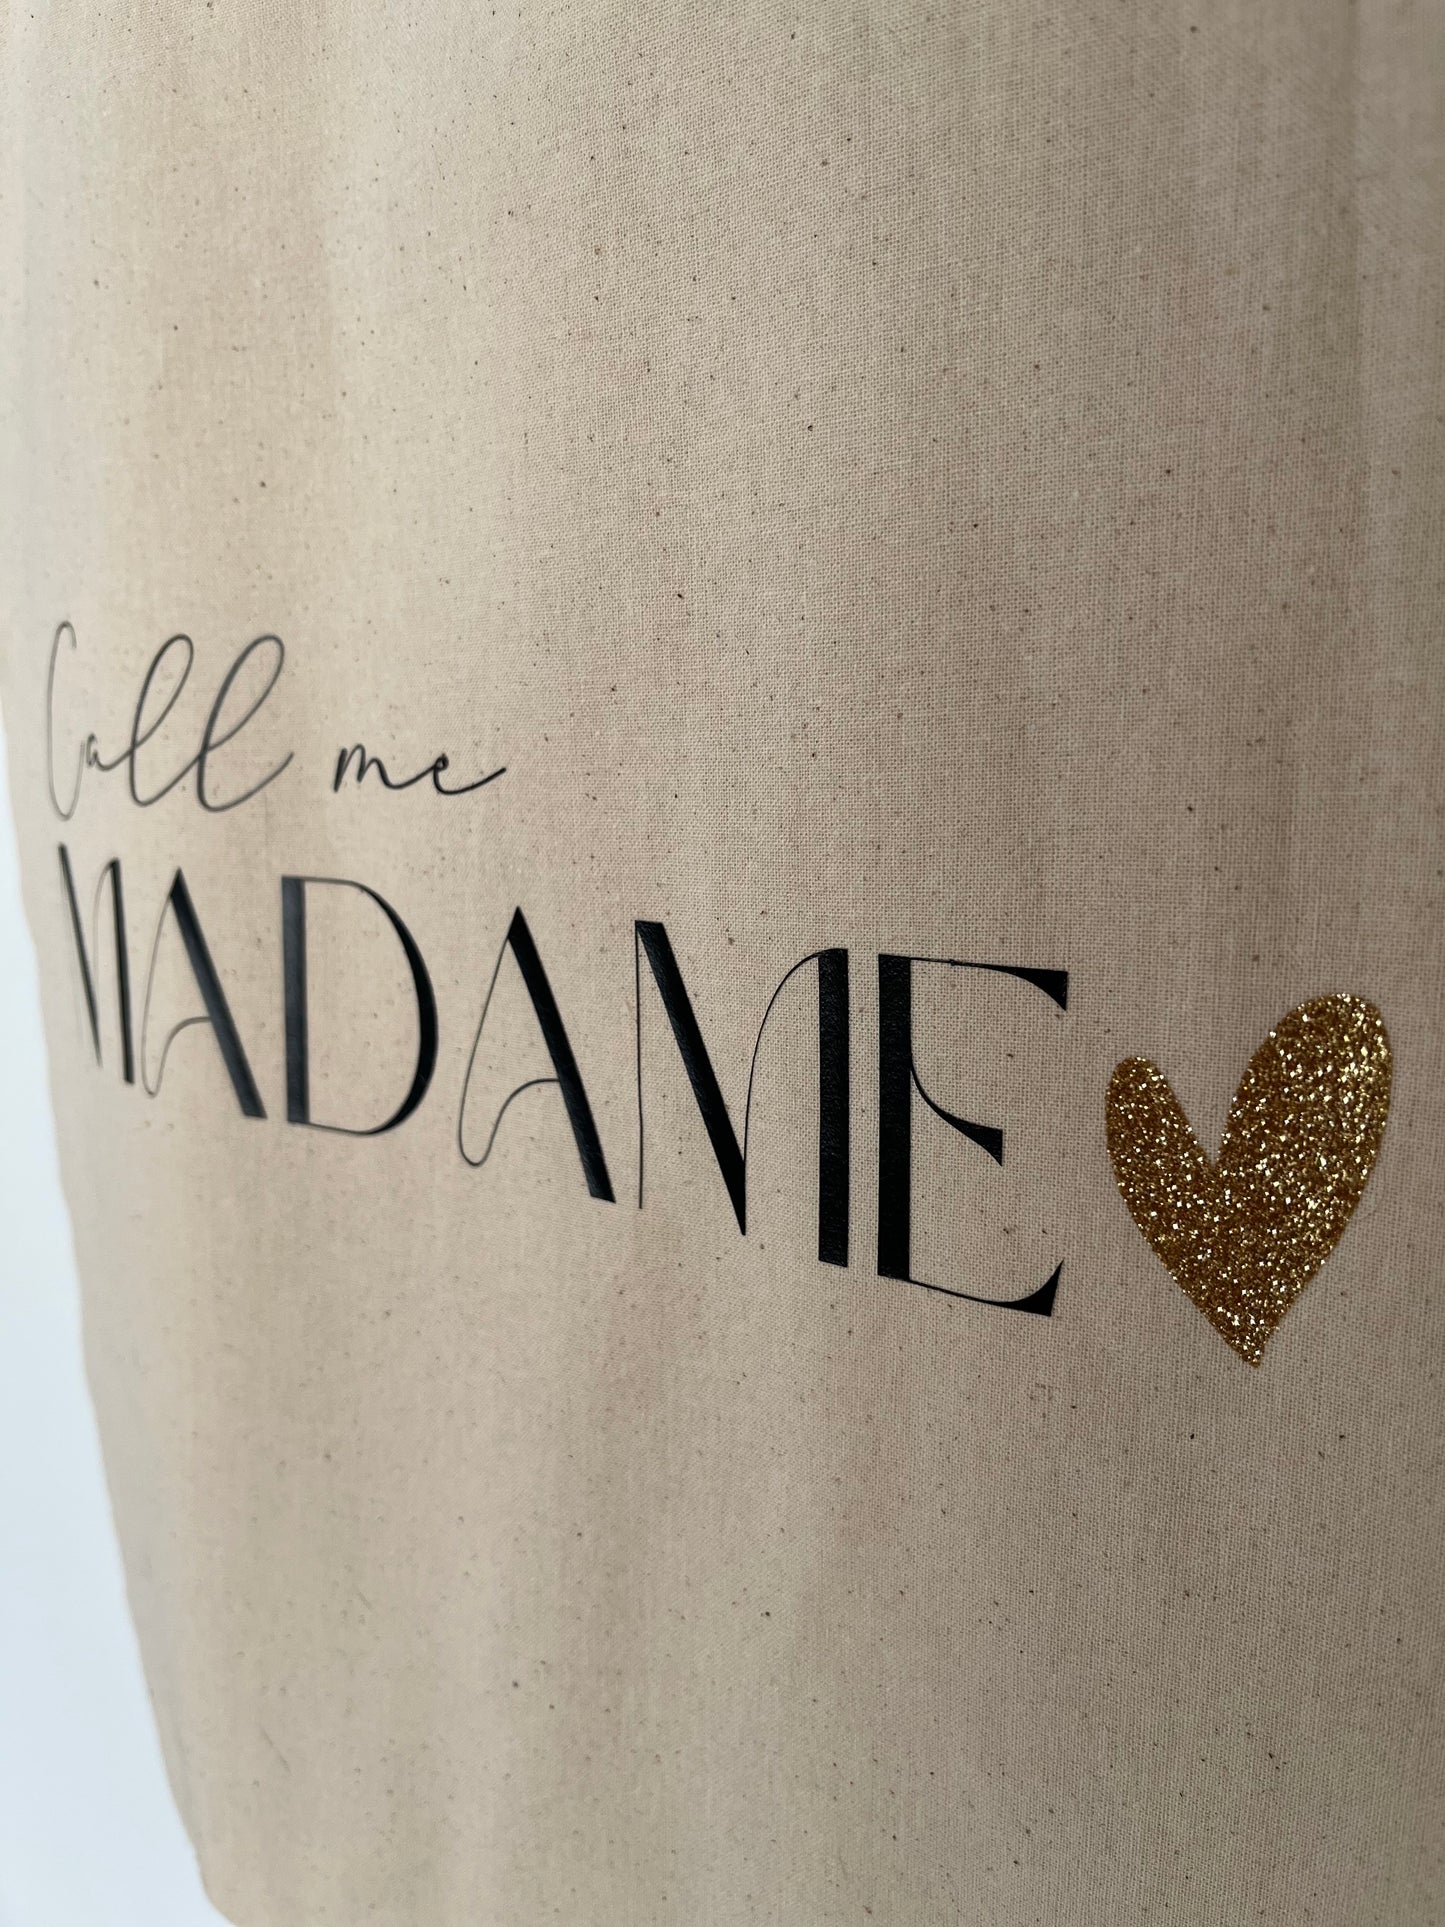 Tote bag - Call me Madame